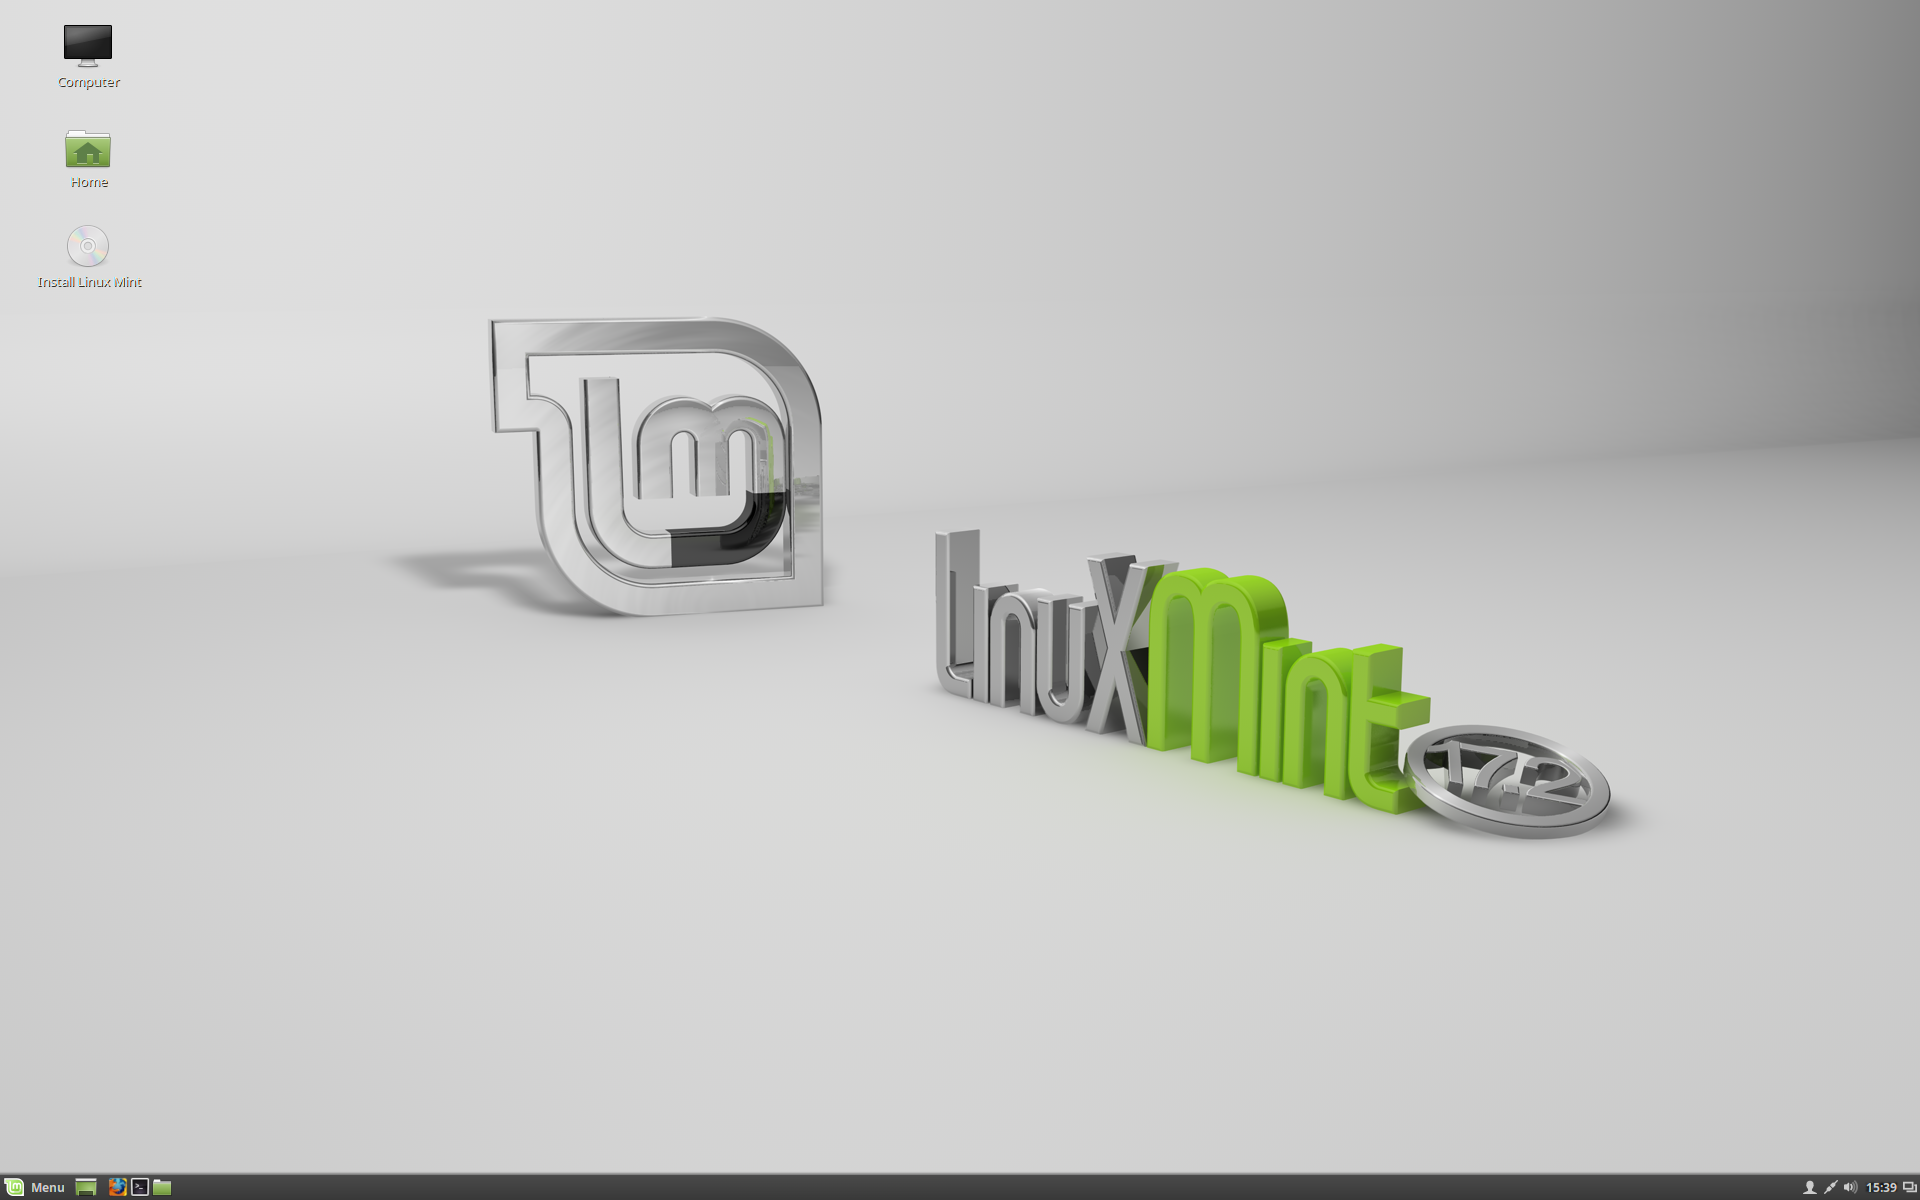 Vydán Linux Mint 17.2 s příchutí Cinnamon a MATE